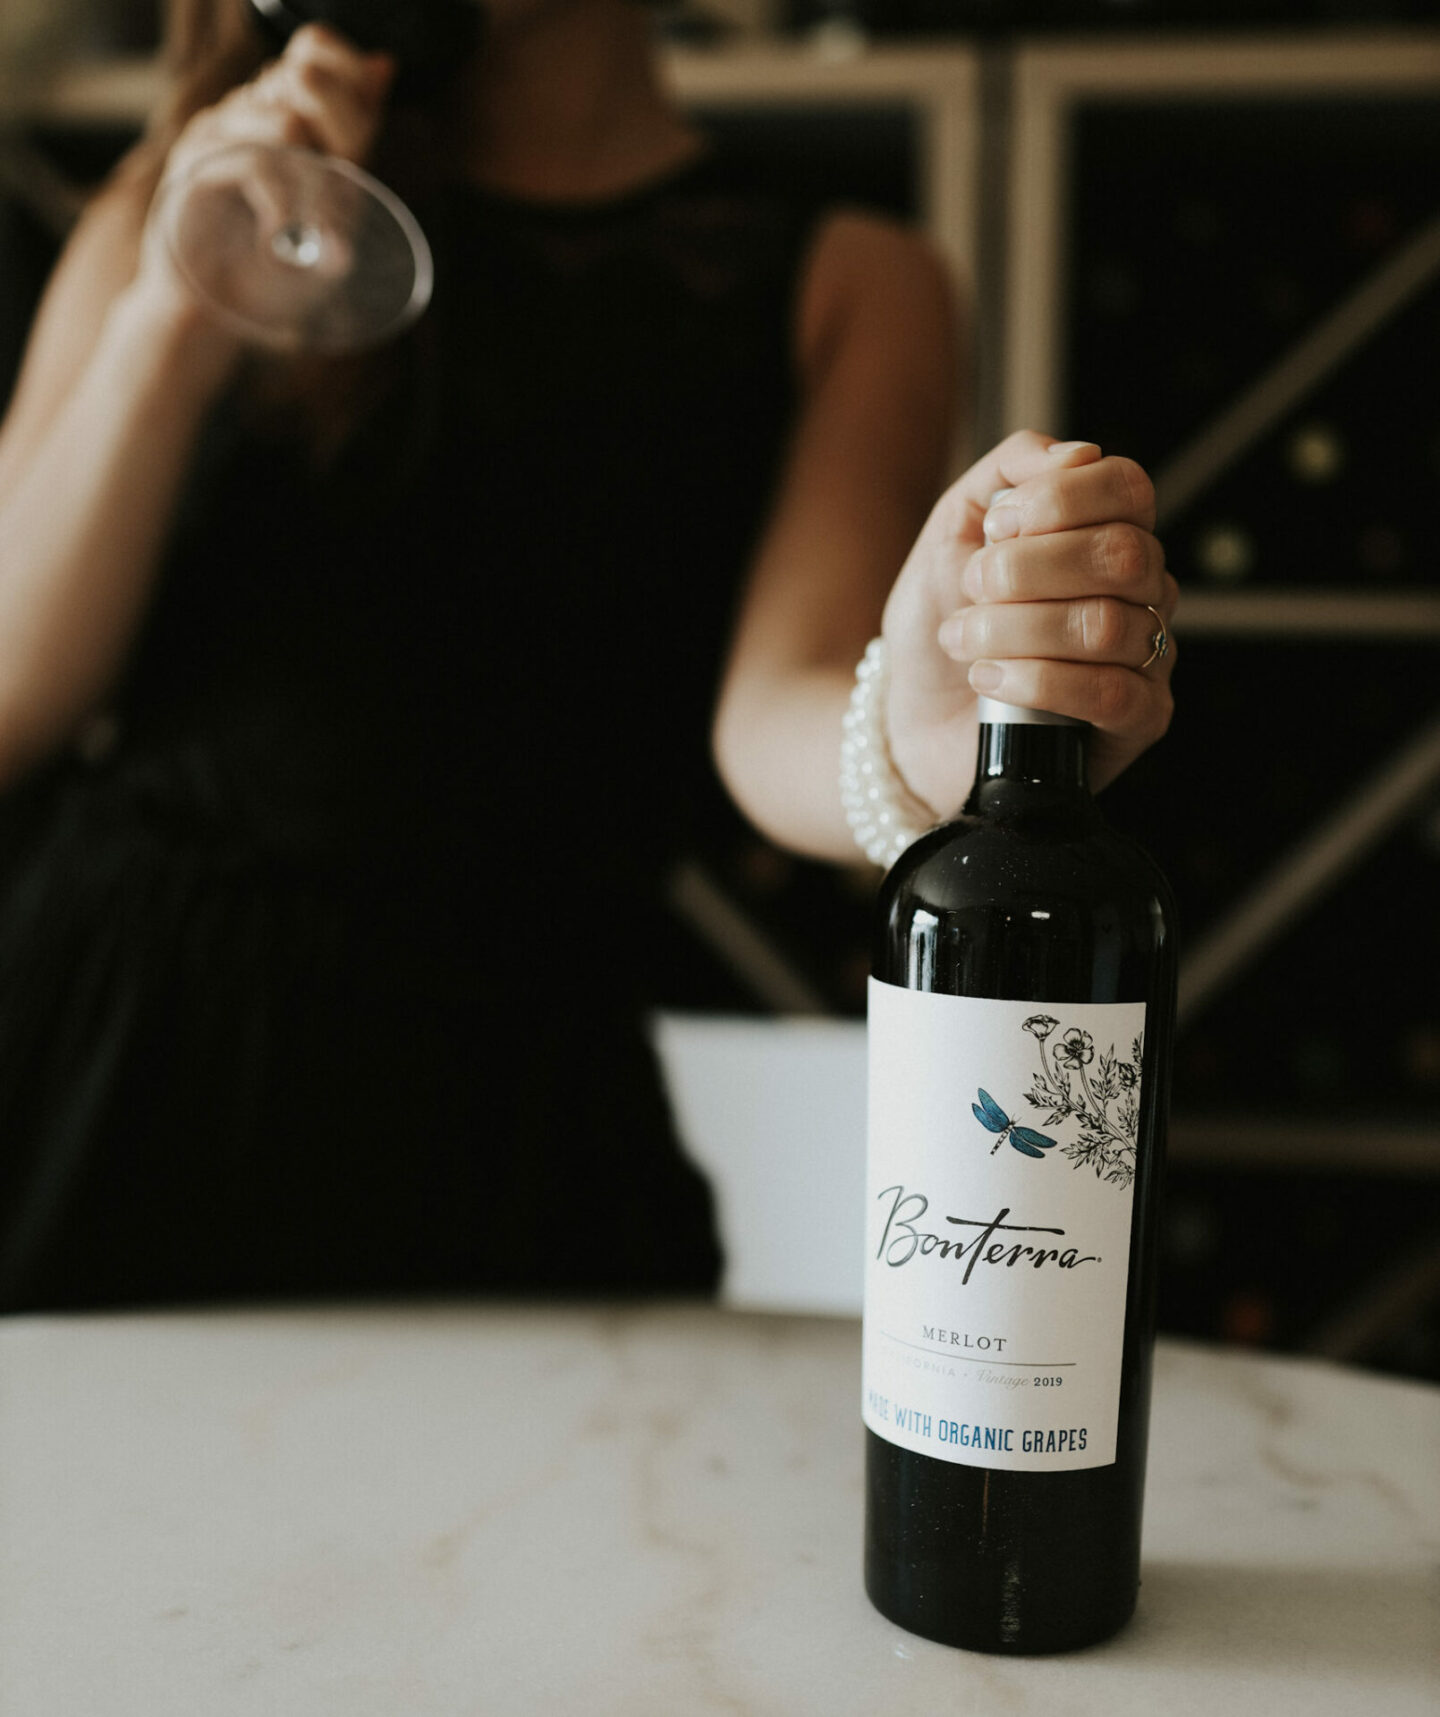 A hand holds a bottle of Bonterra Merlot - one of the best Merlot wines